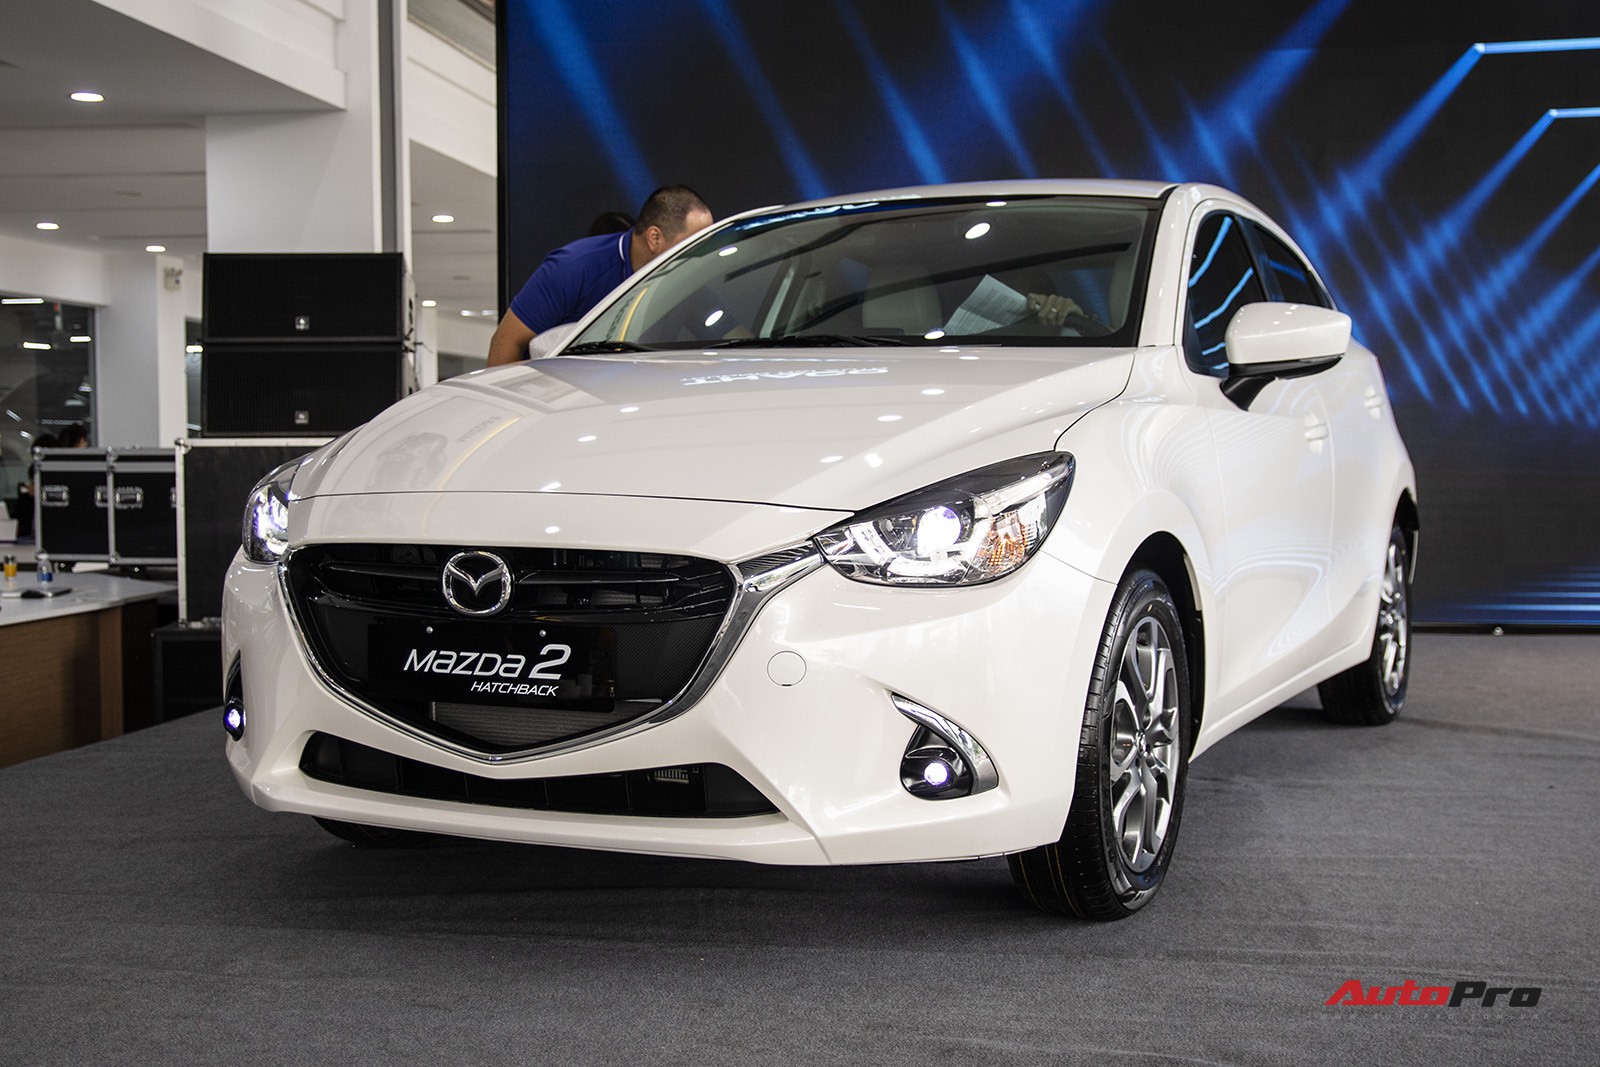 Đánh Giá Xe Mazda 2 Từ Chuyên Gia Có Nên Mua Mazda 2 Hay Không